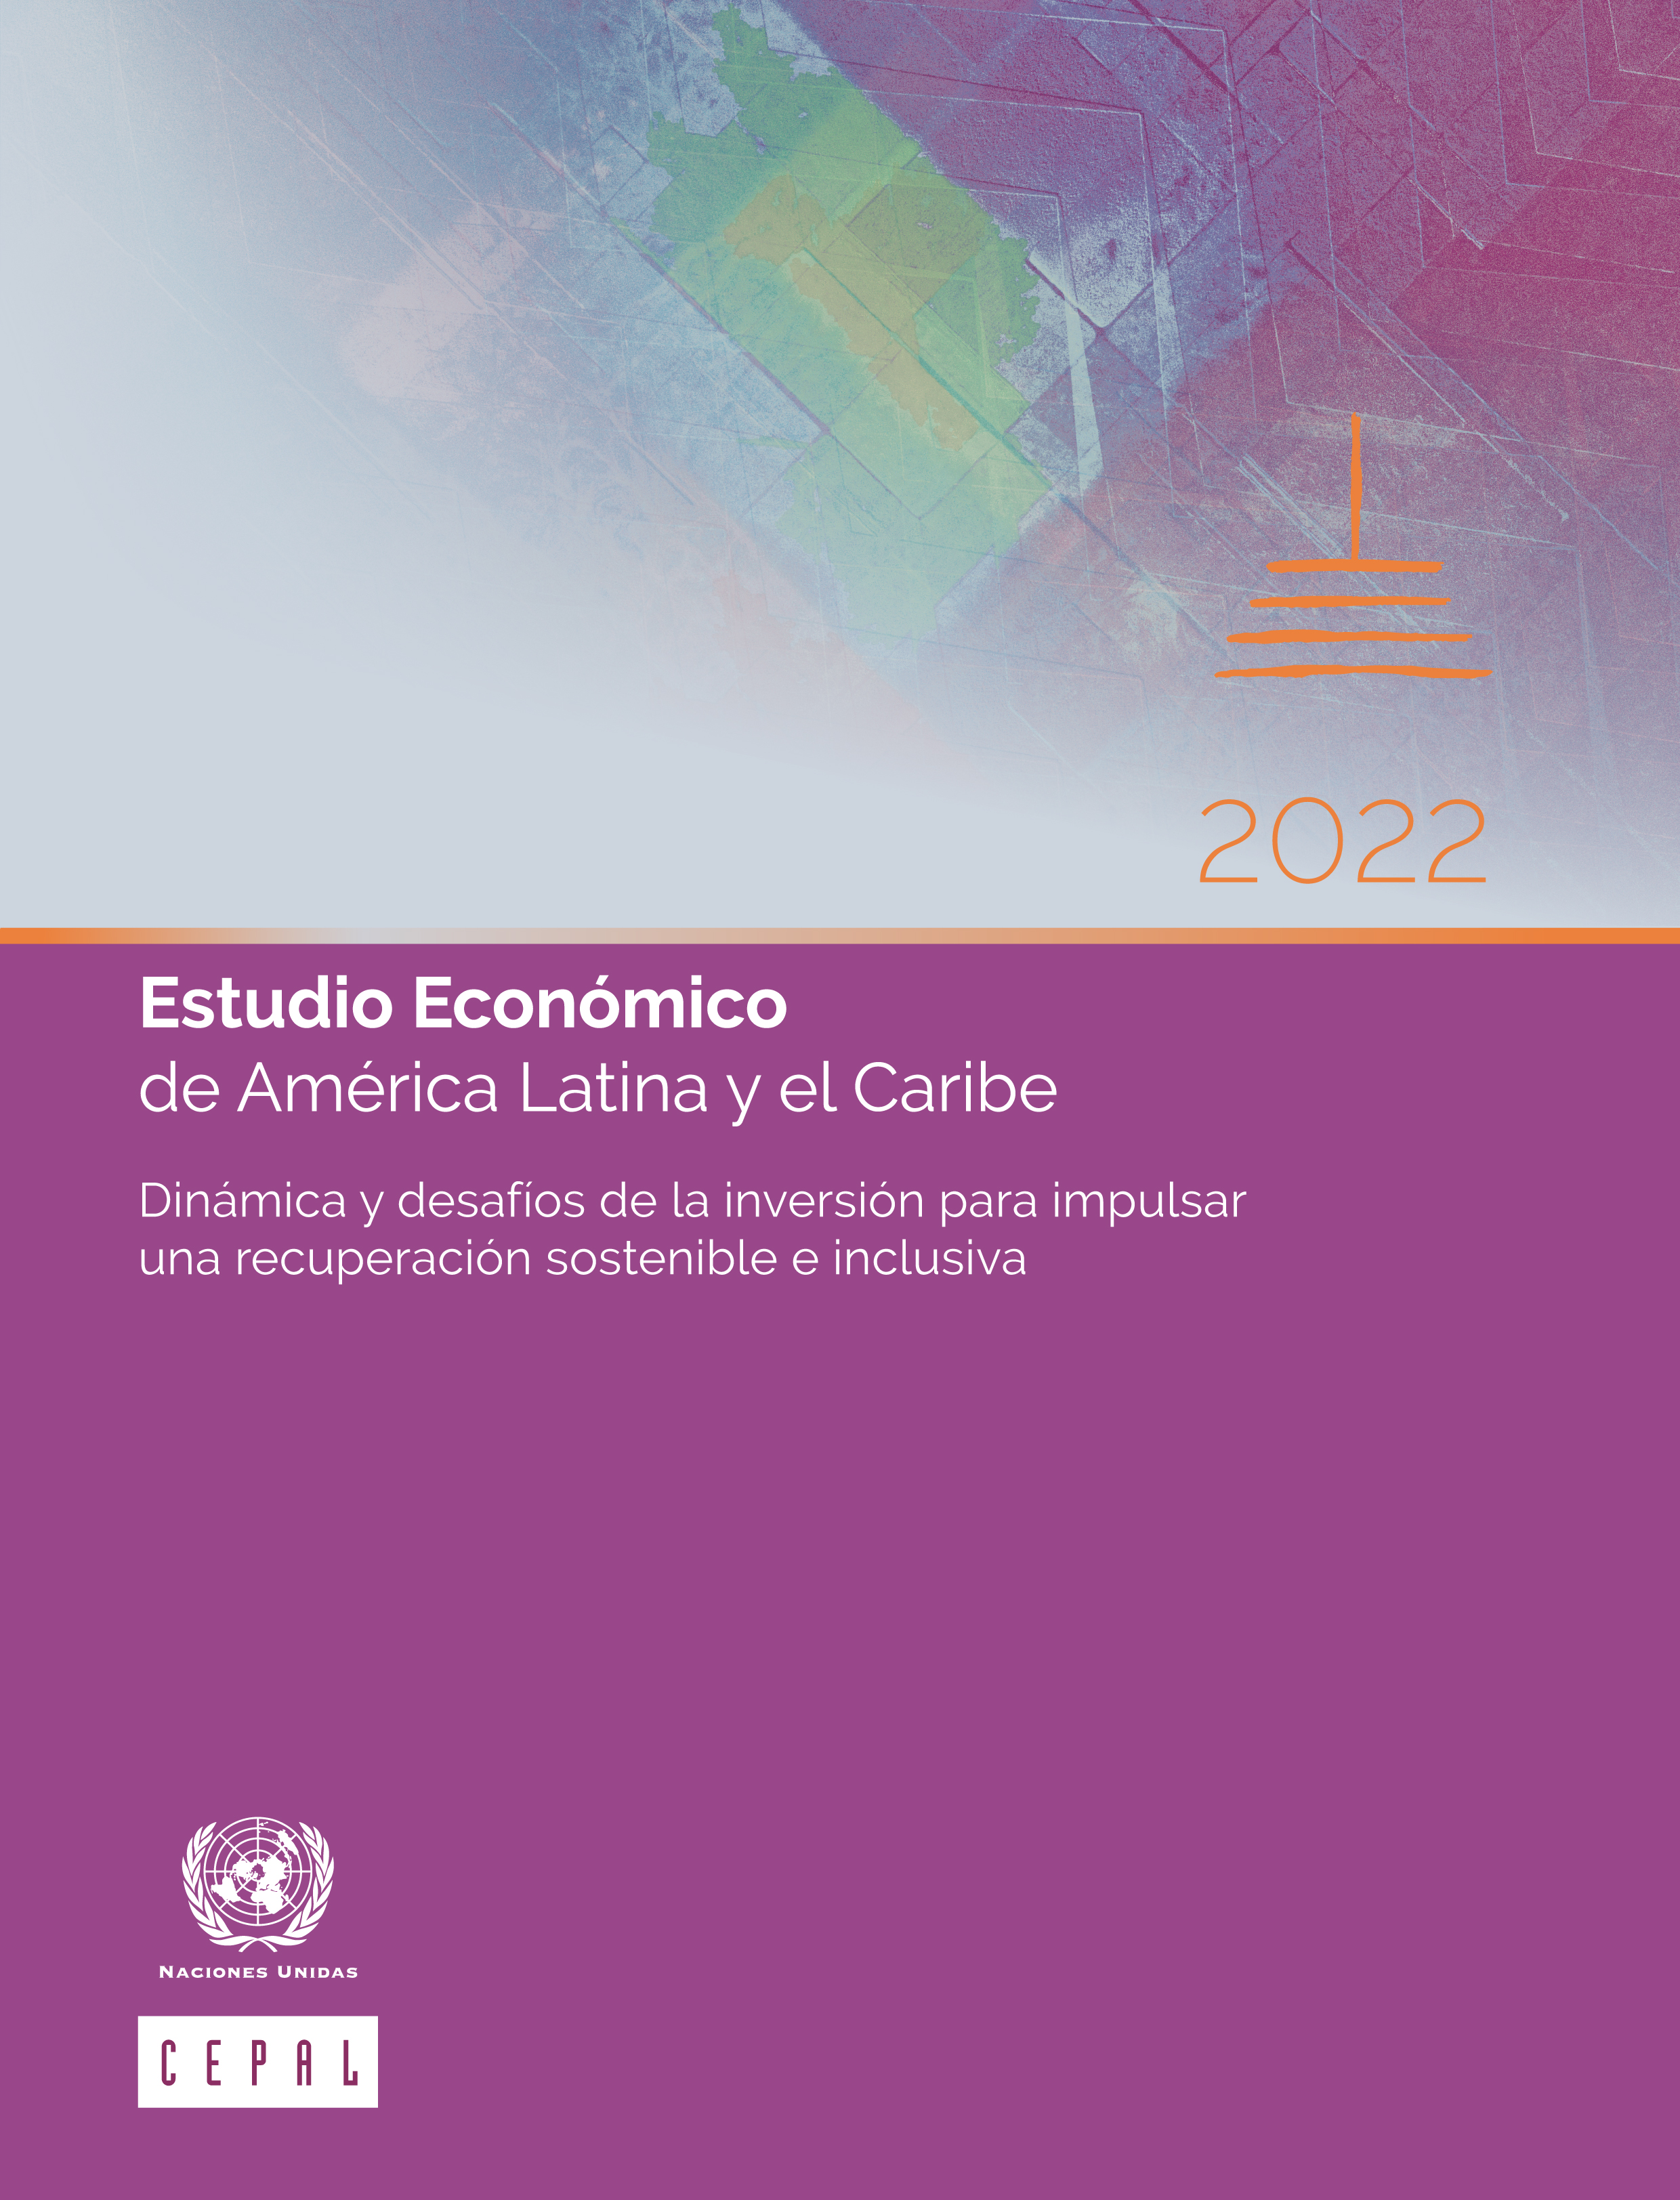 image of Estudio Económico de América Latina y el Caribe 2022